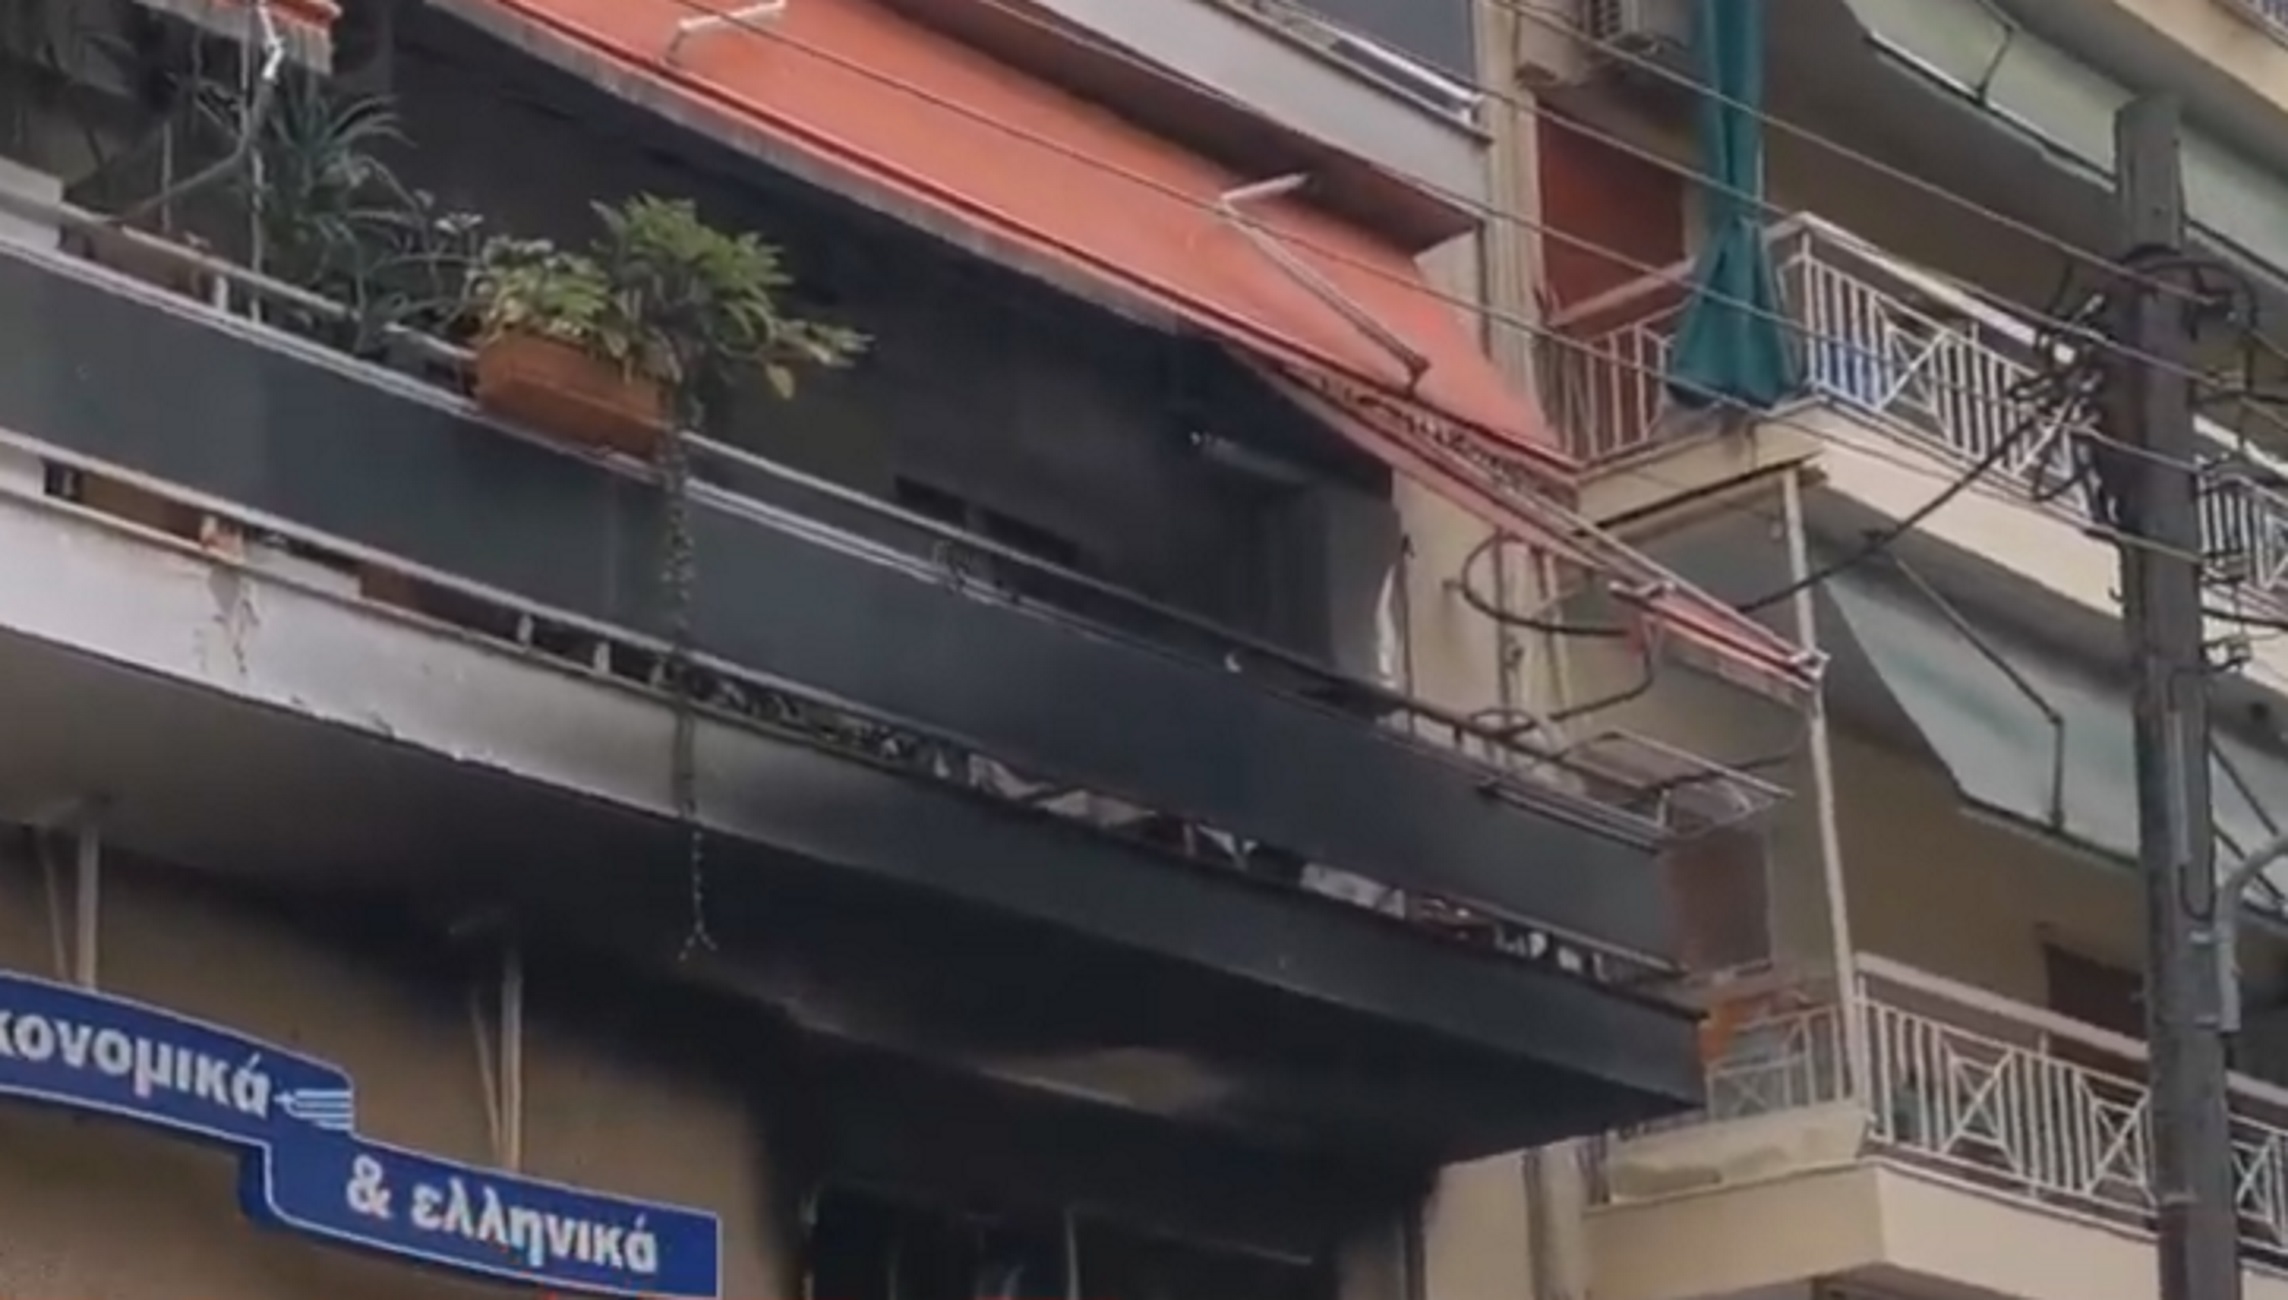 Θεσσαλονίκη: Φωτιά σε μεγάλο σούπερ μάρκετ! Οι φλόγες έφτασαν σε διαμέρισμα πρώτου ορόφου (Βίντεο)